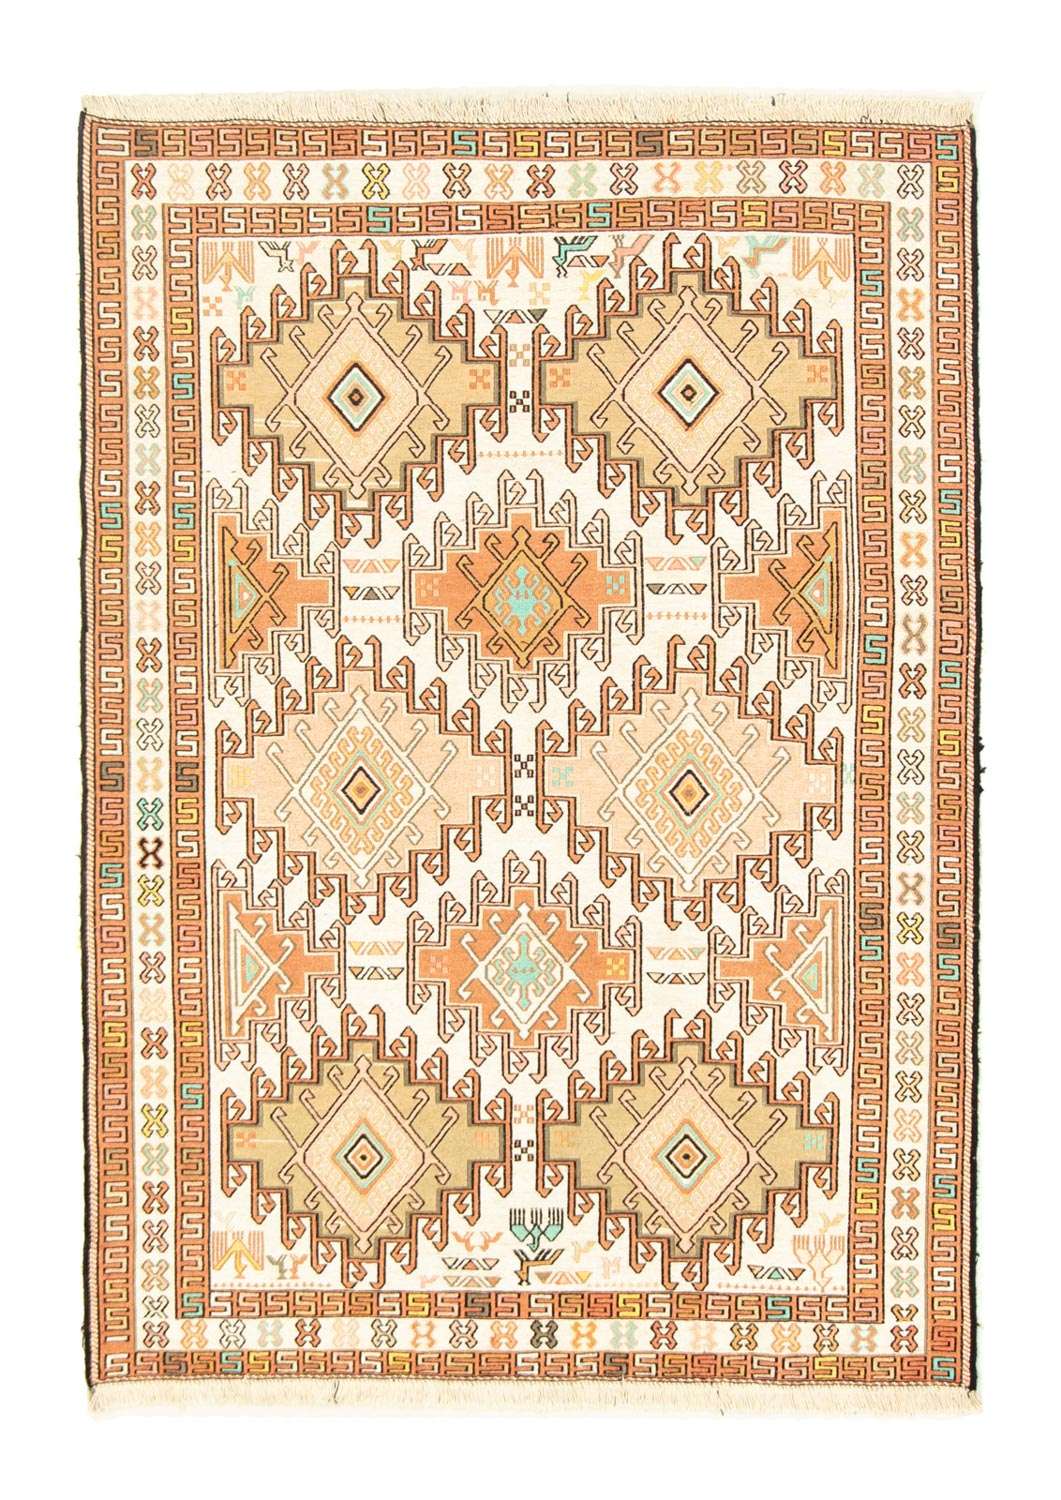 Perský koberec - Nomádský - 149 x 102 cm - béžová